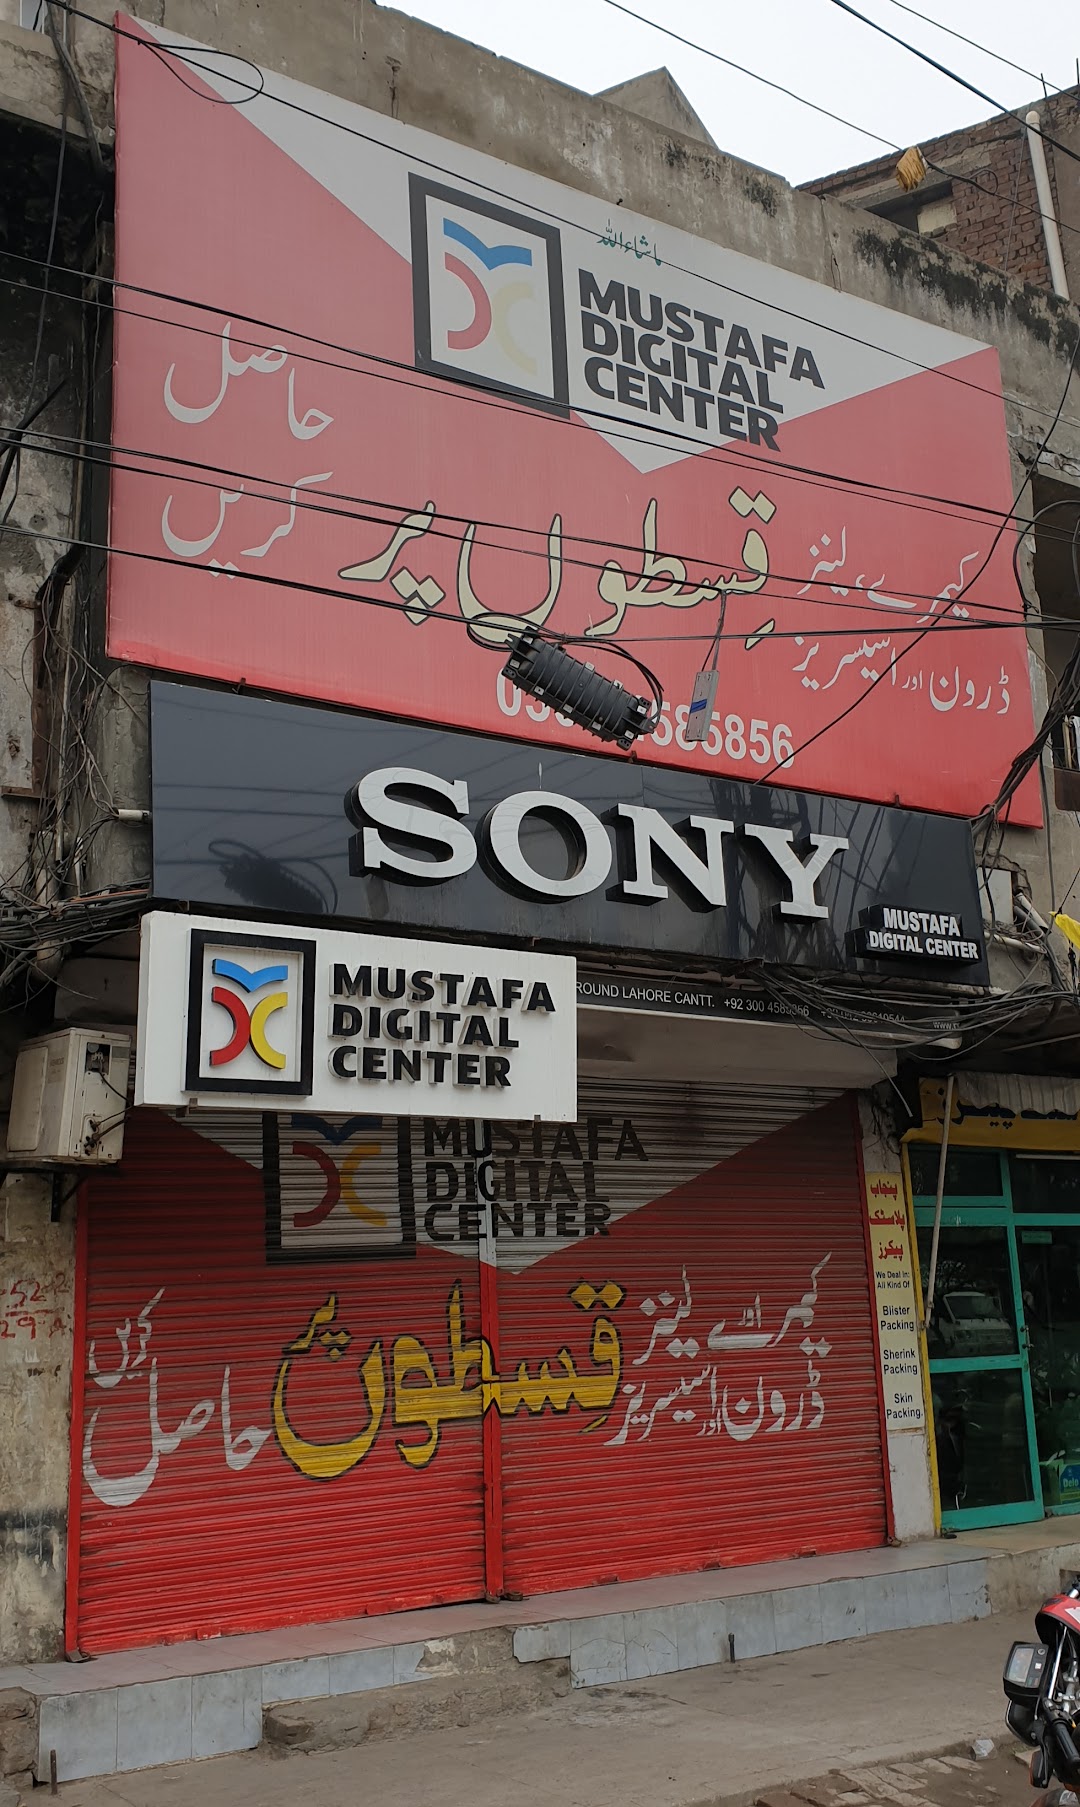 Mustafa Digital Center